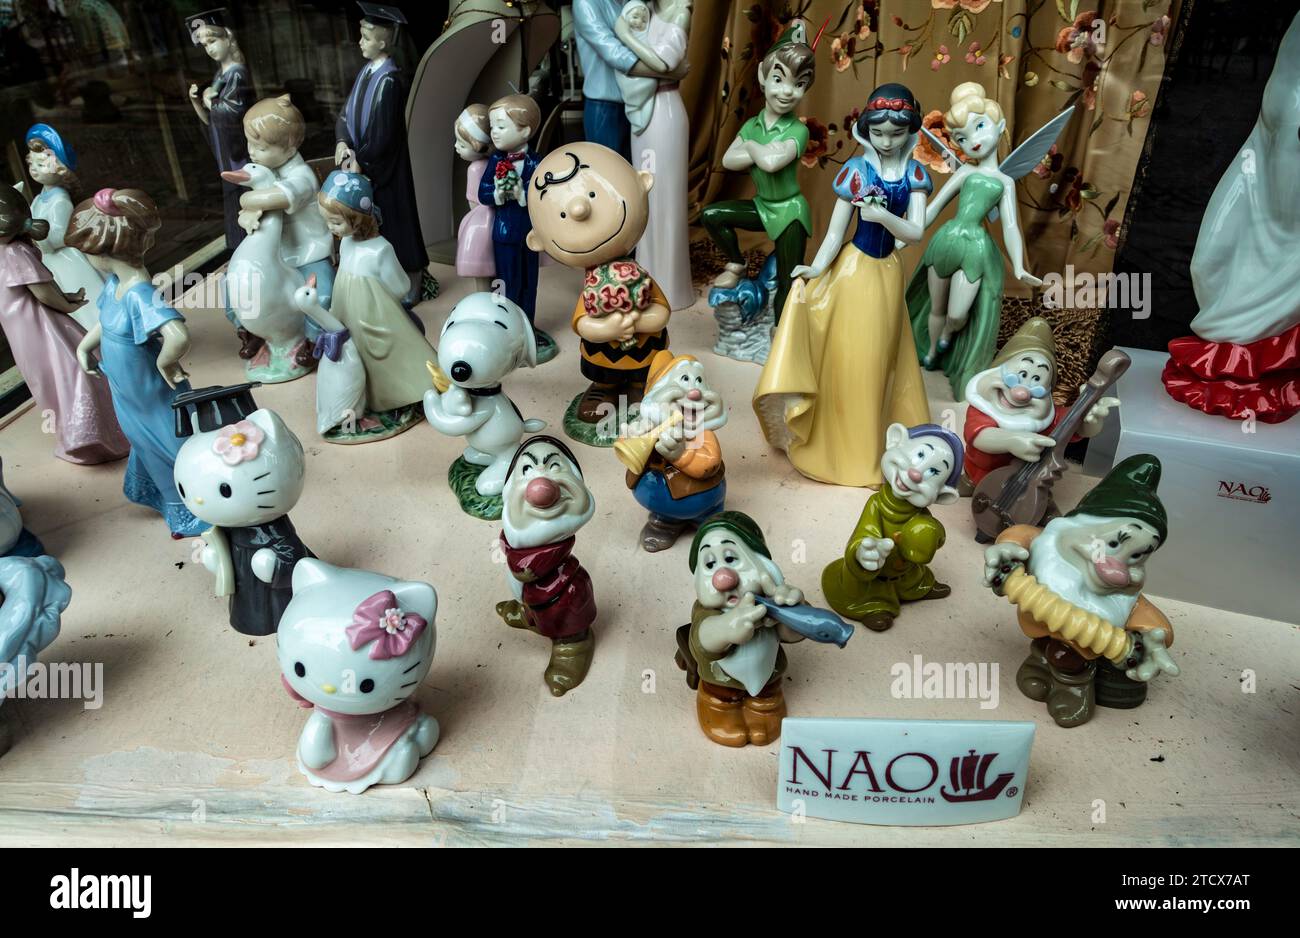 Figure in porcellana NAO fatte a mano esposte in un negozio a Siviglia, in Spagna. Foto Stock